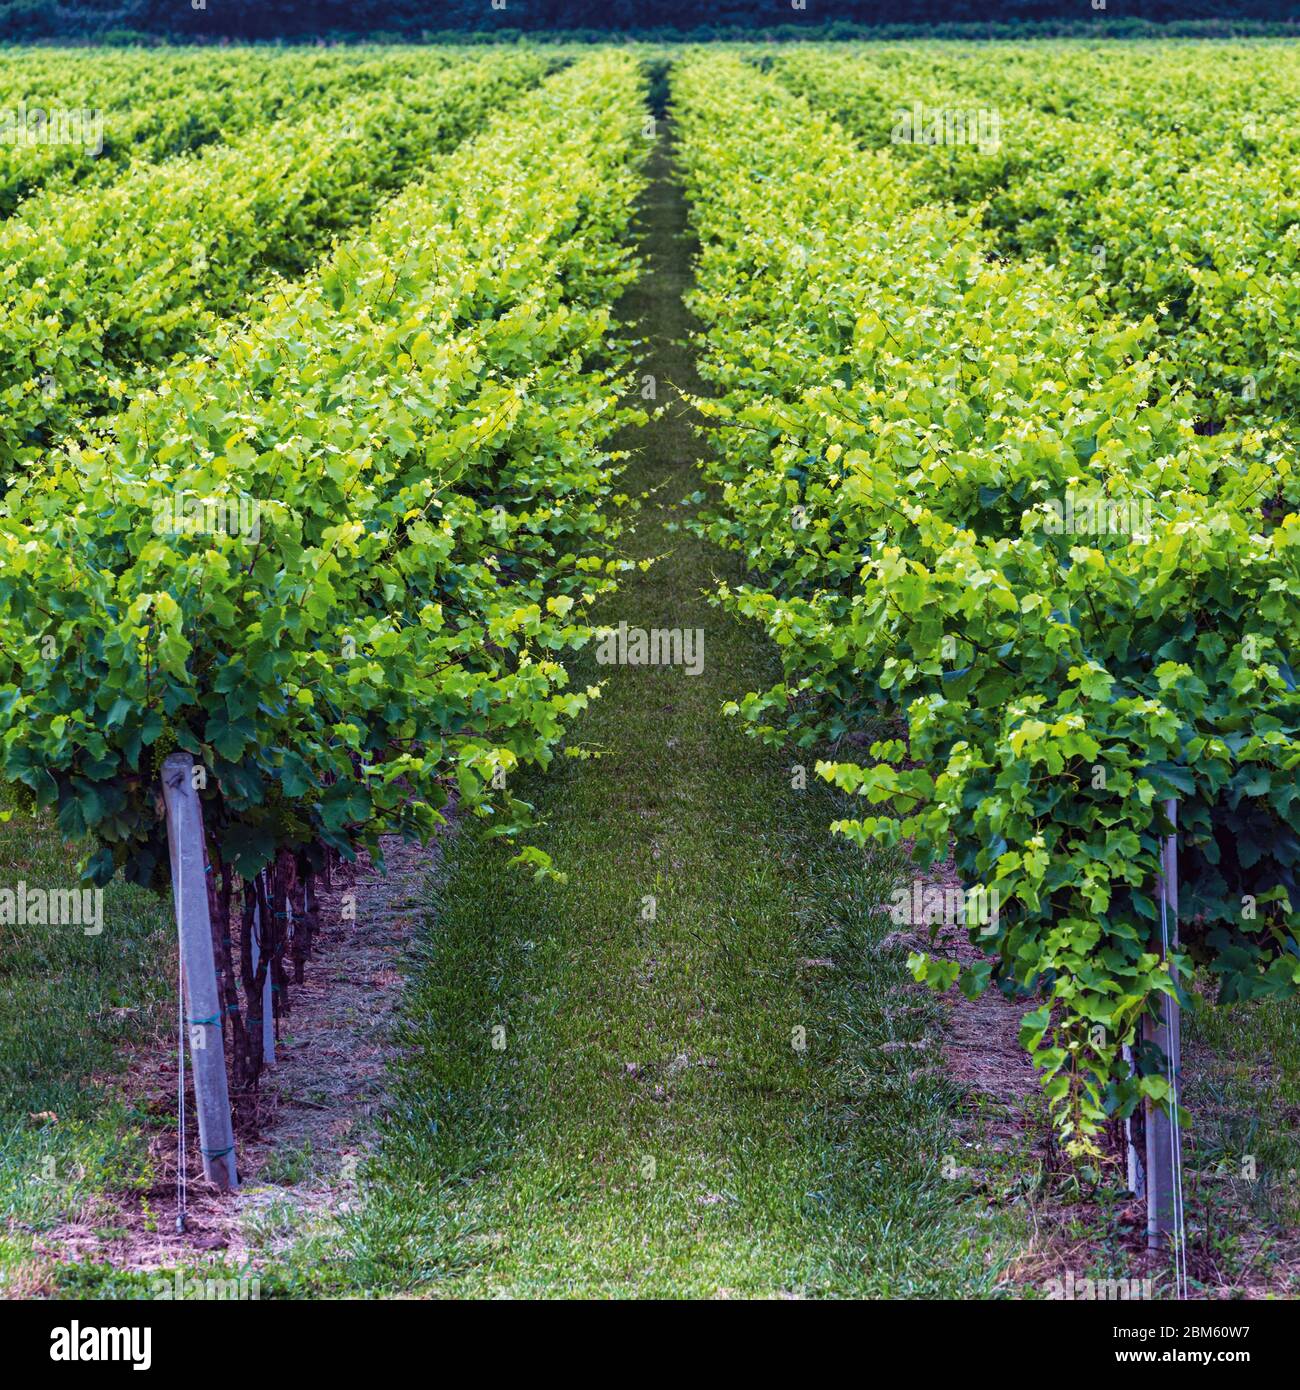 Vignes poussant près de Casali Franceschinis, province d'Udine, Italie. Banque D'Images